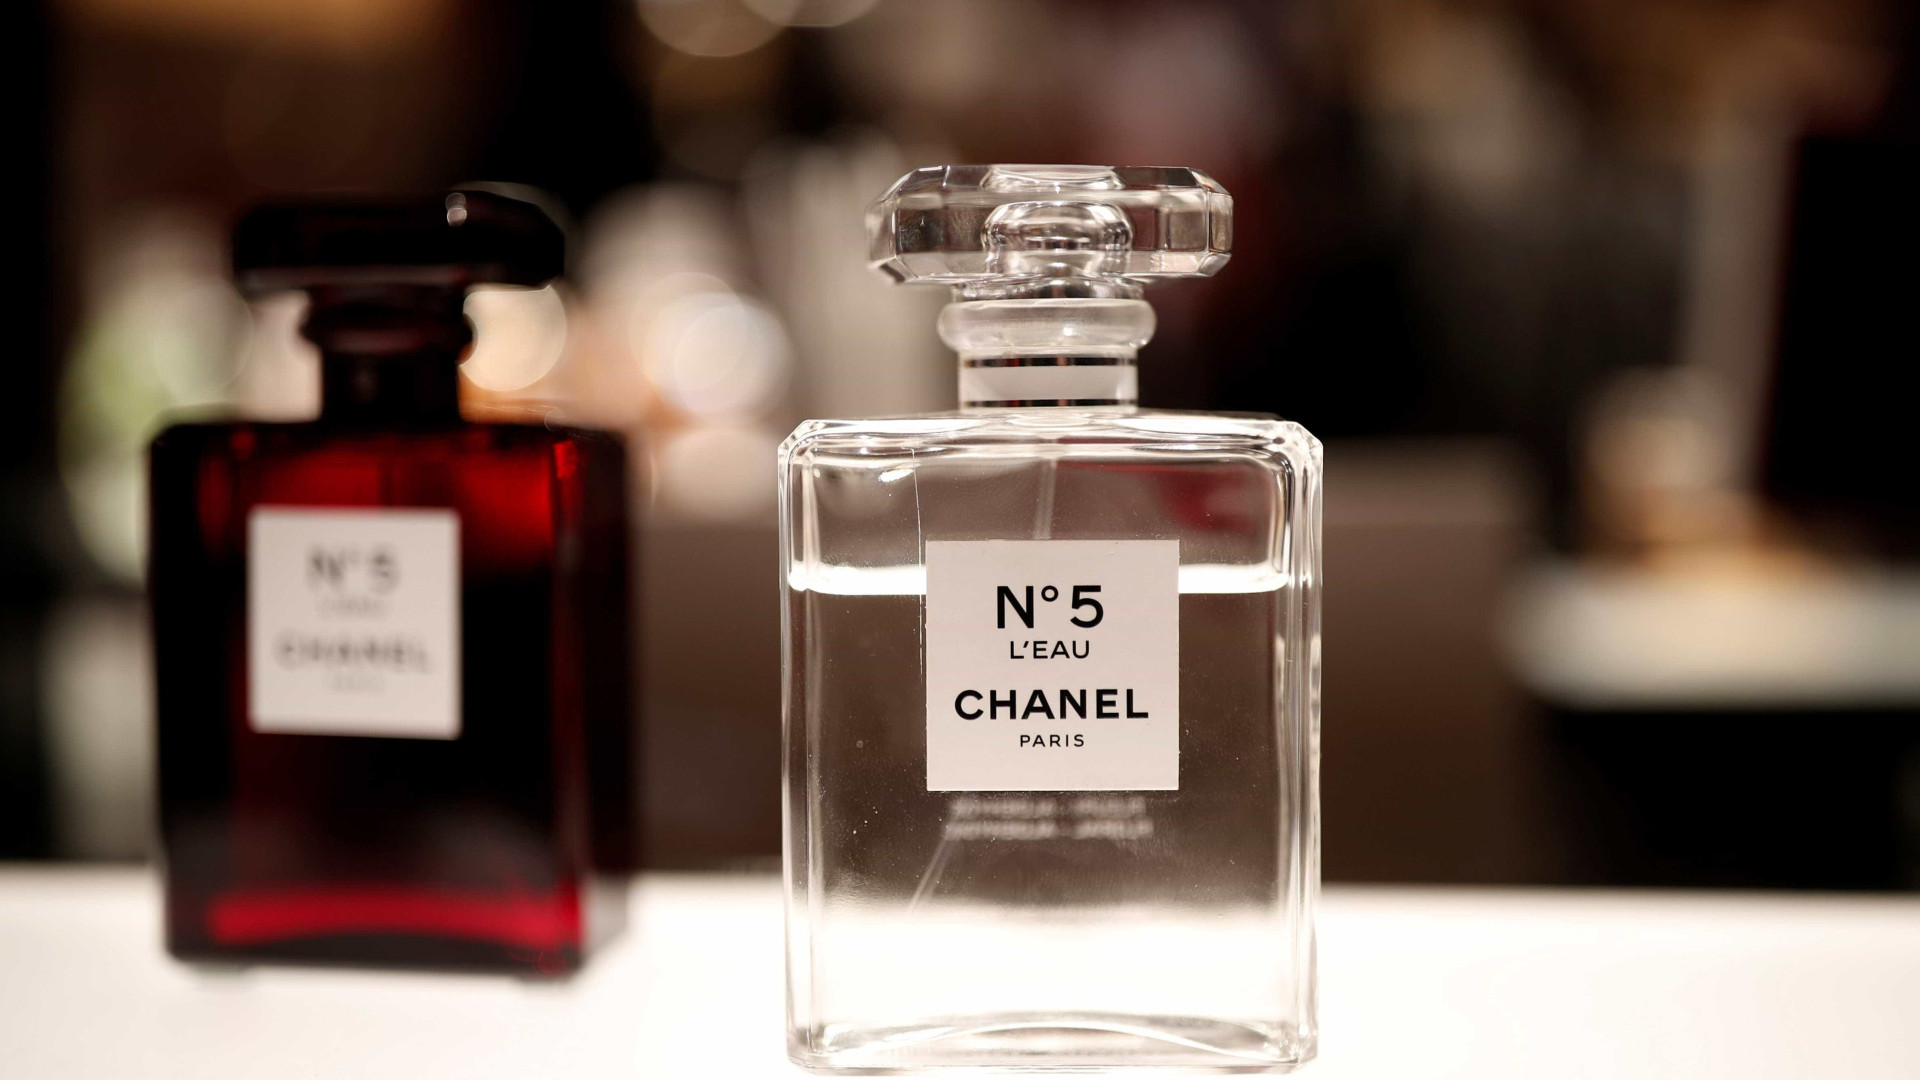 Romance conta história da criação do Chanel nº5 com base em fatos reais